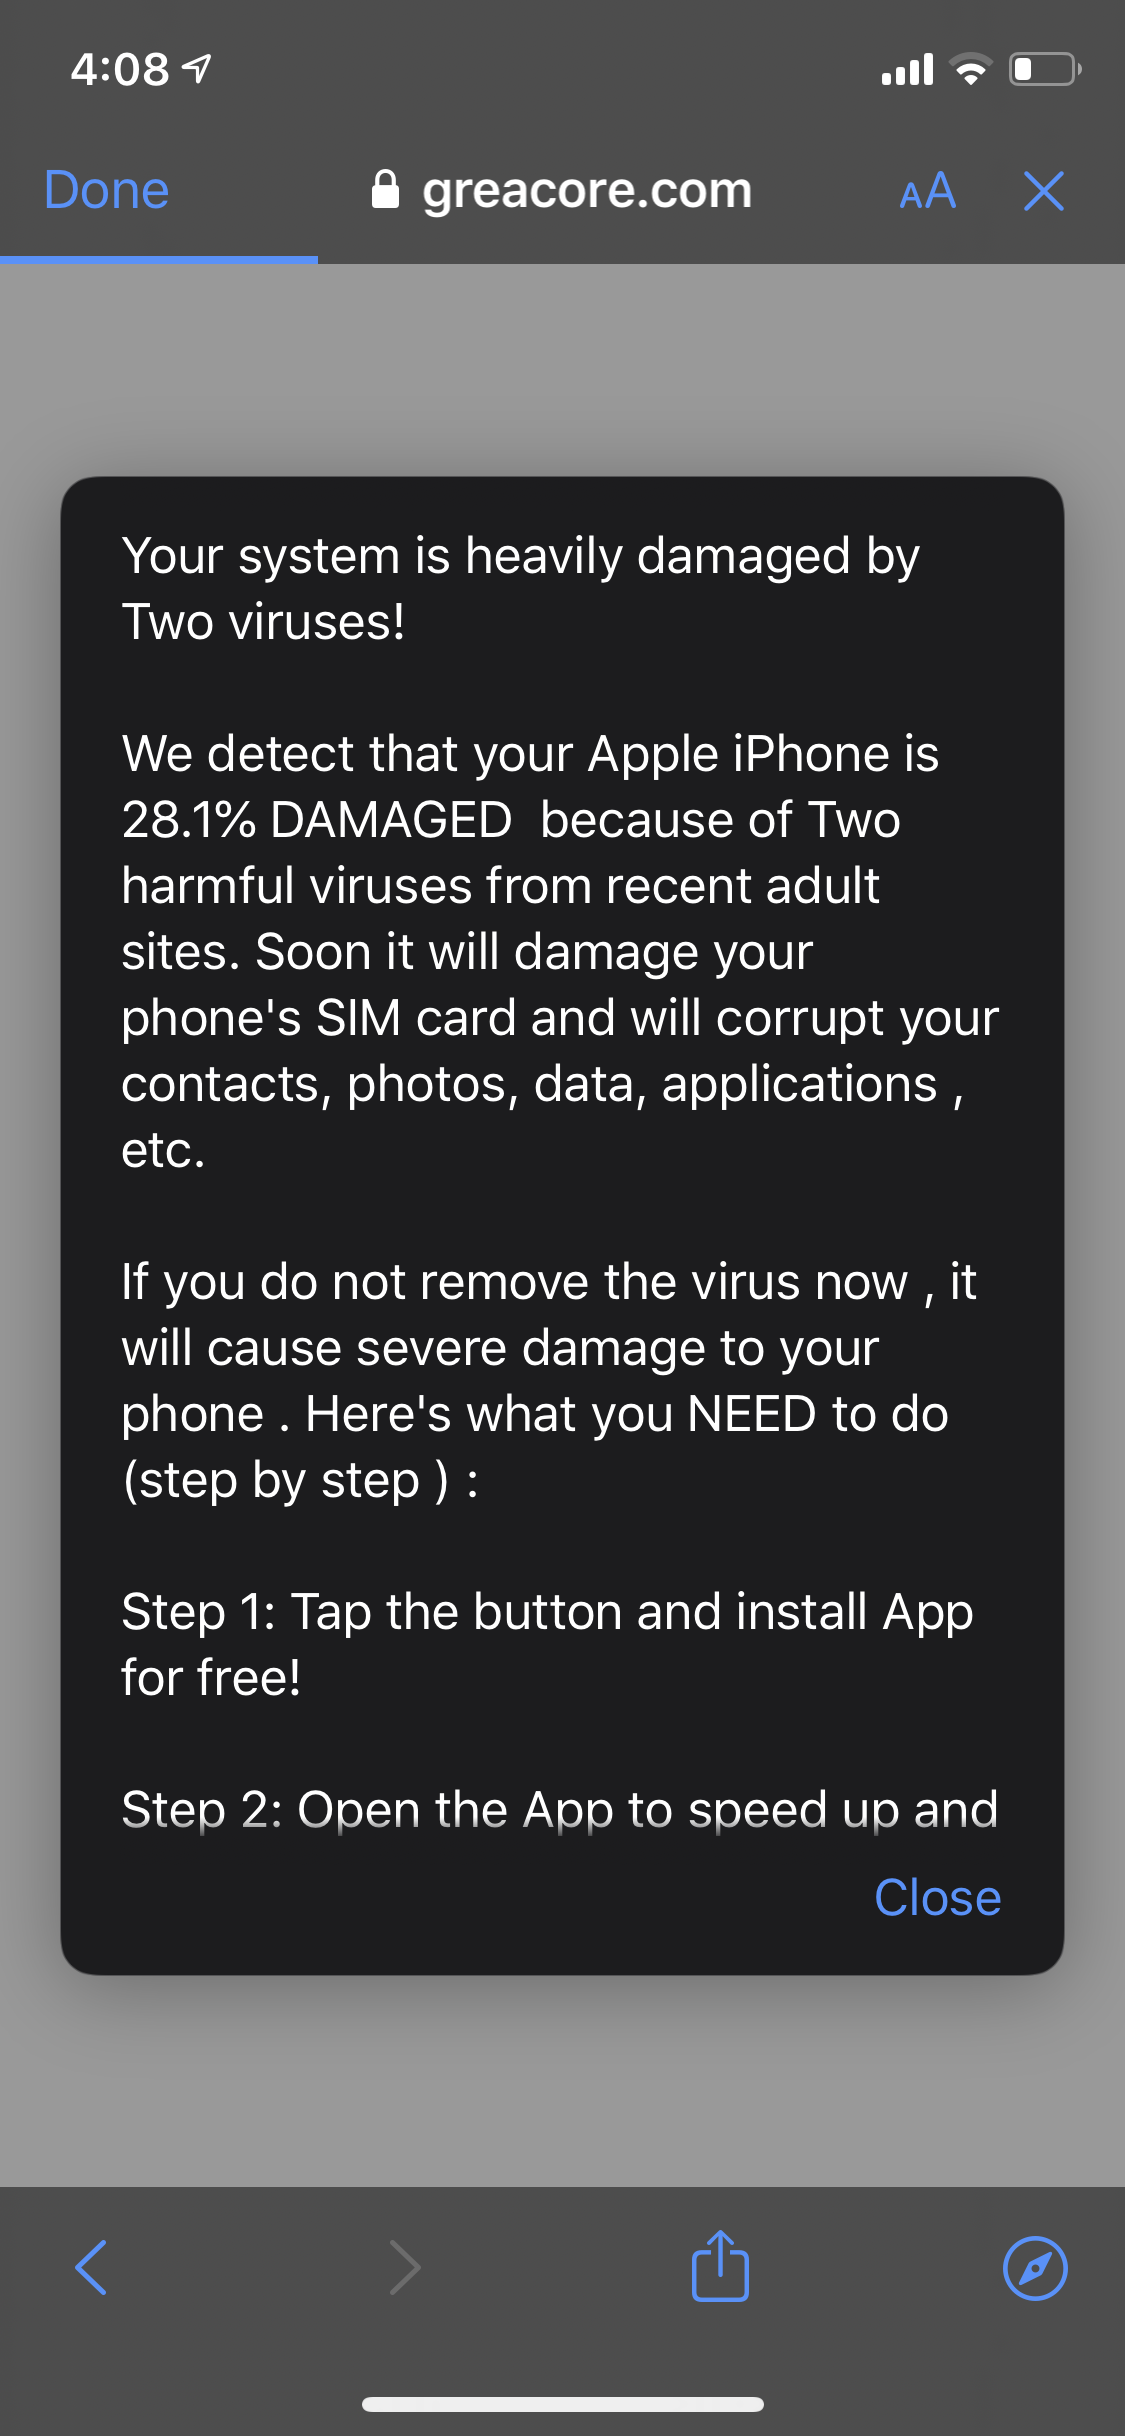 L'allerta virus sul mio telefono è reale?